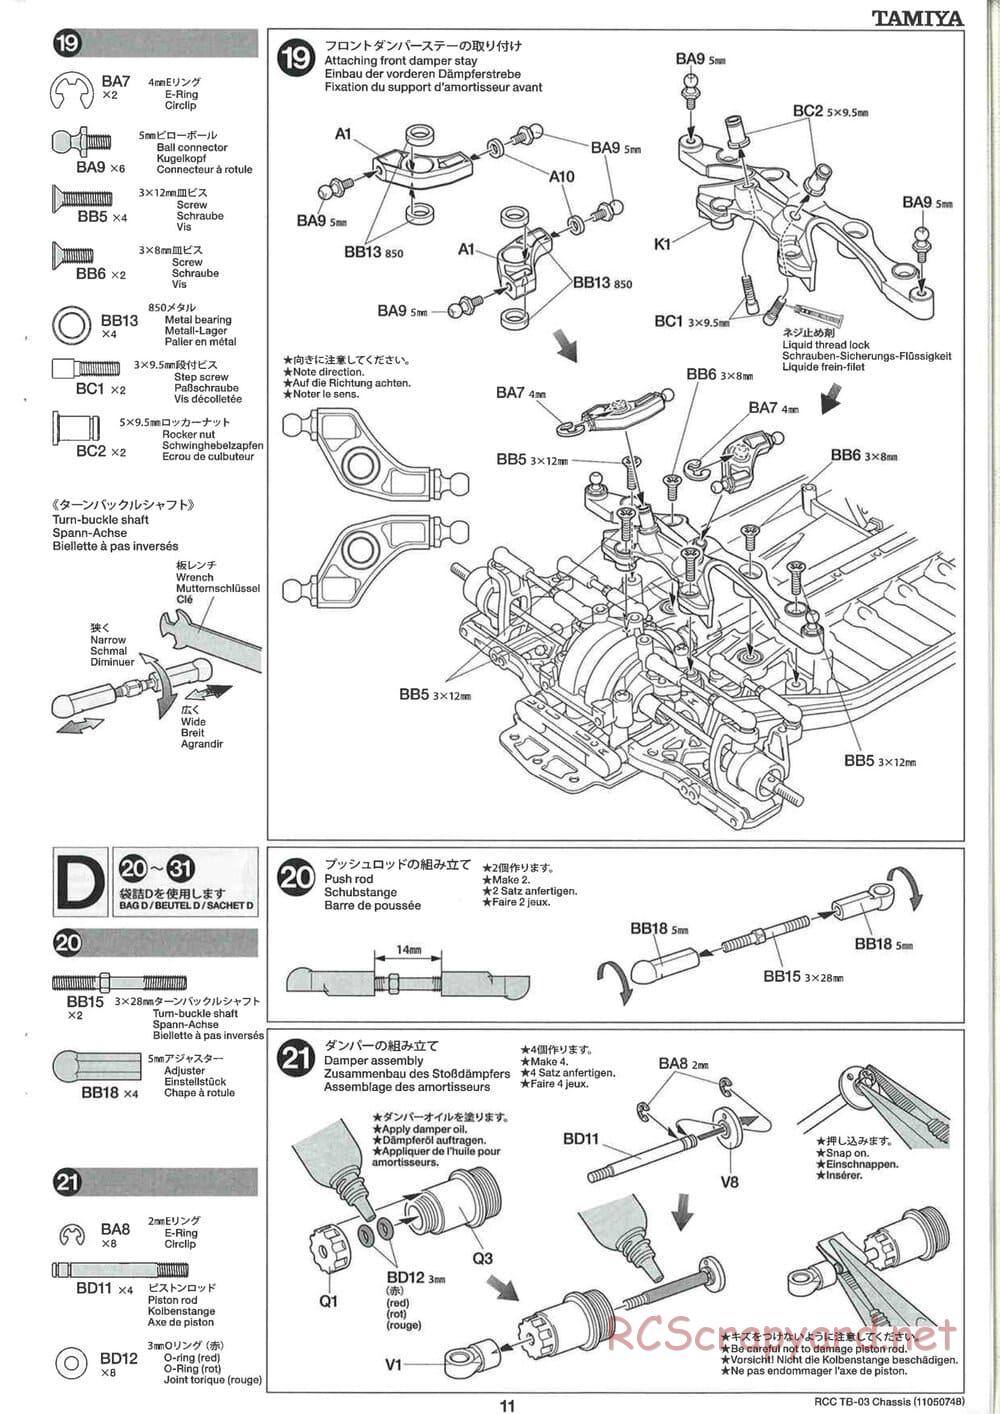 Tamiya - TB-03 Chassis - Manual - Page 11